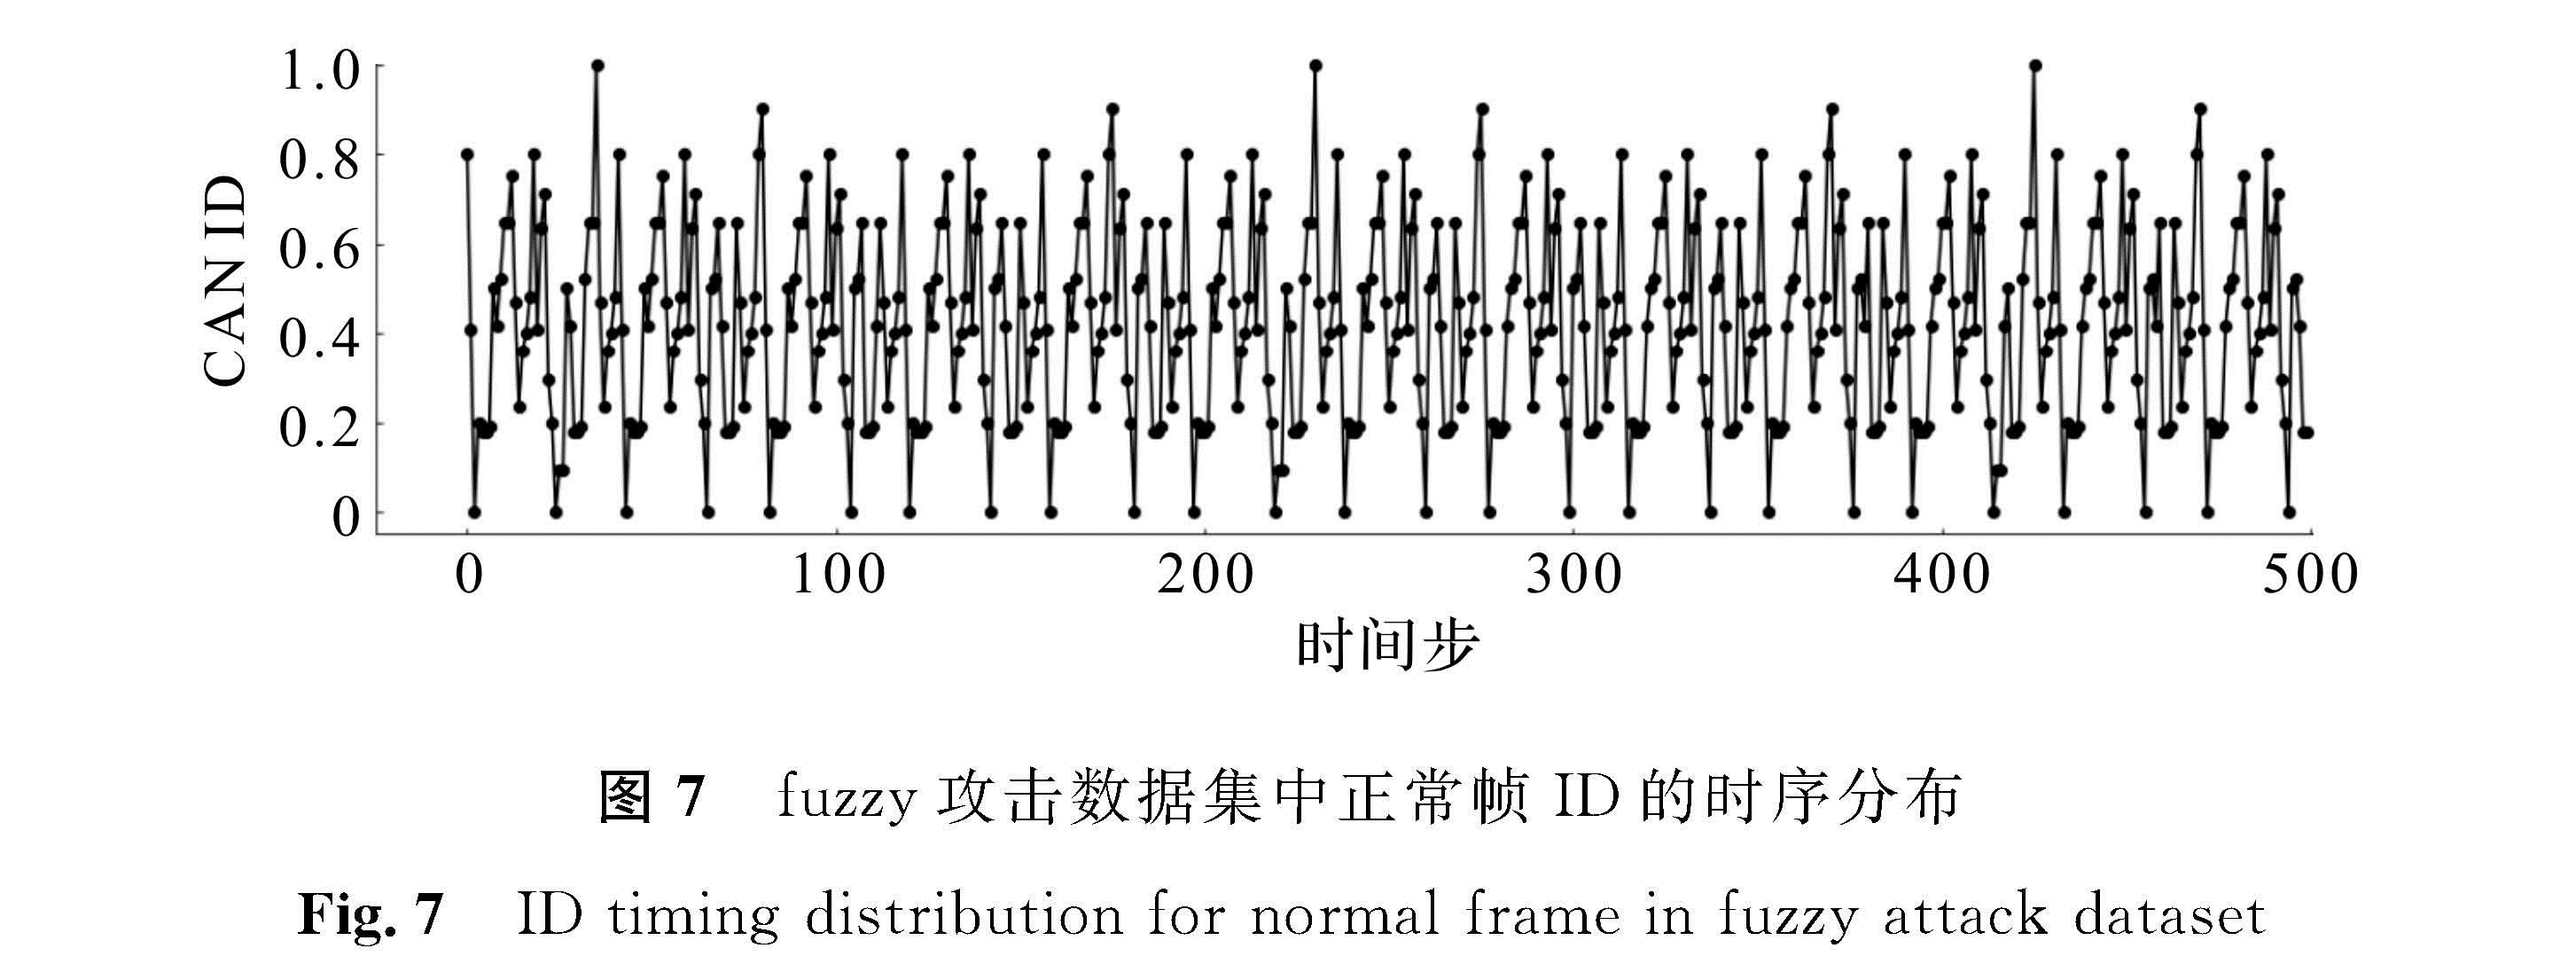 图7 fuzzy攻击数据集中正常帧ID的时序分布<br/>Fig.7 ID timing distribution for normal frame in fuzzy attack dataset